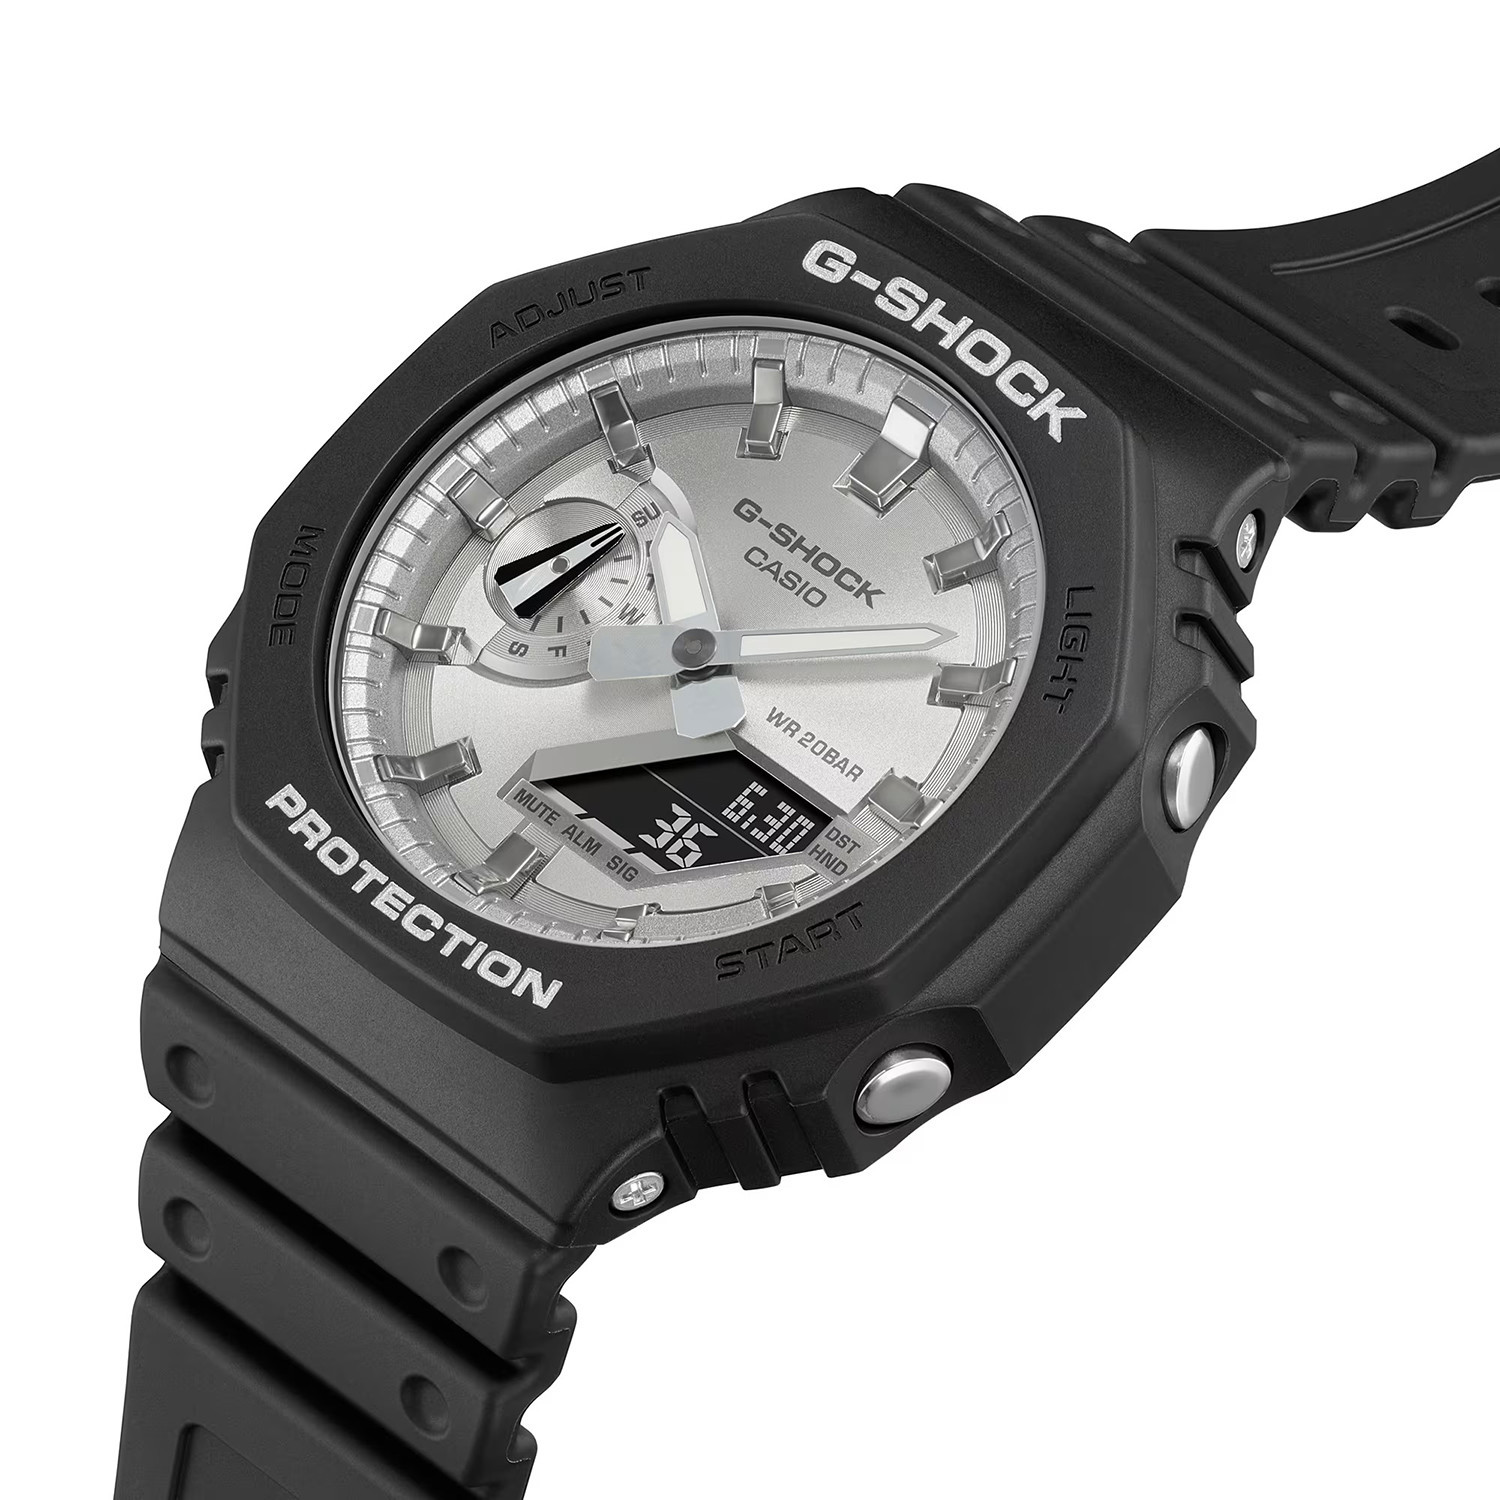 Montre CASIO G-shock bracelet noir cadran acier gris